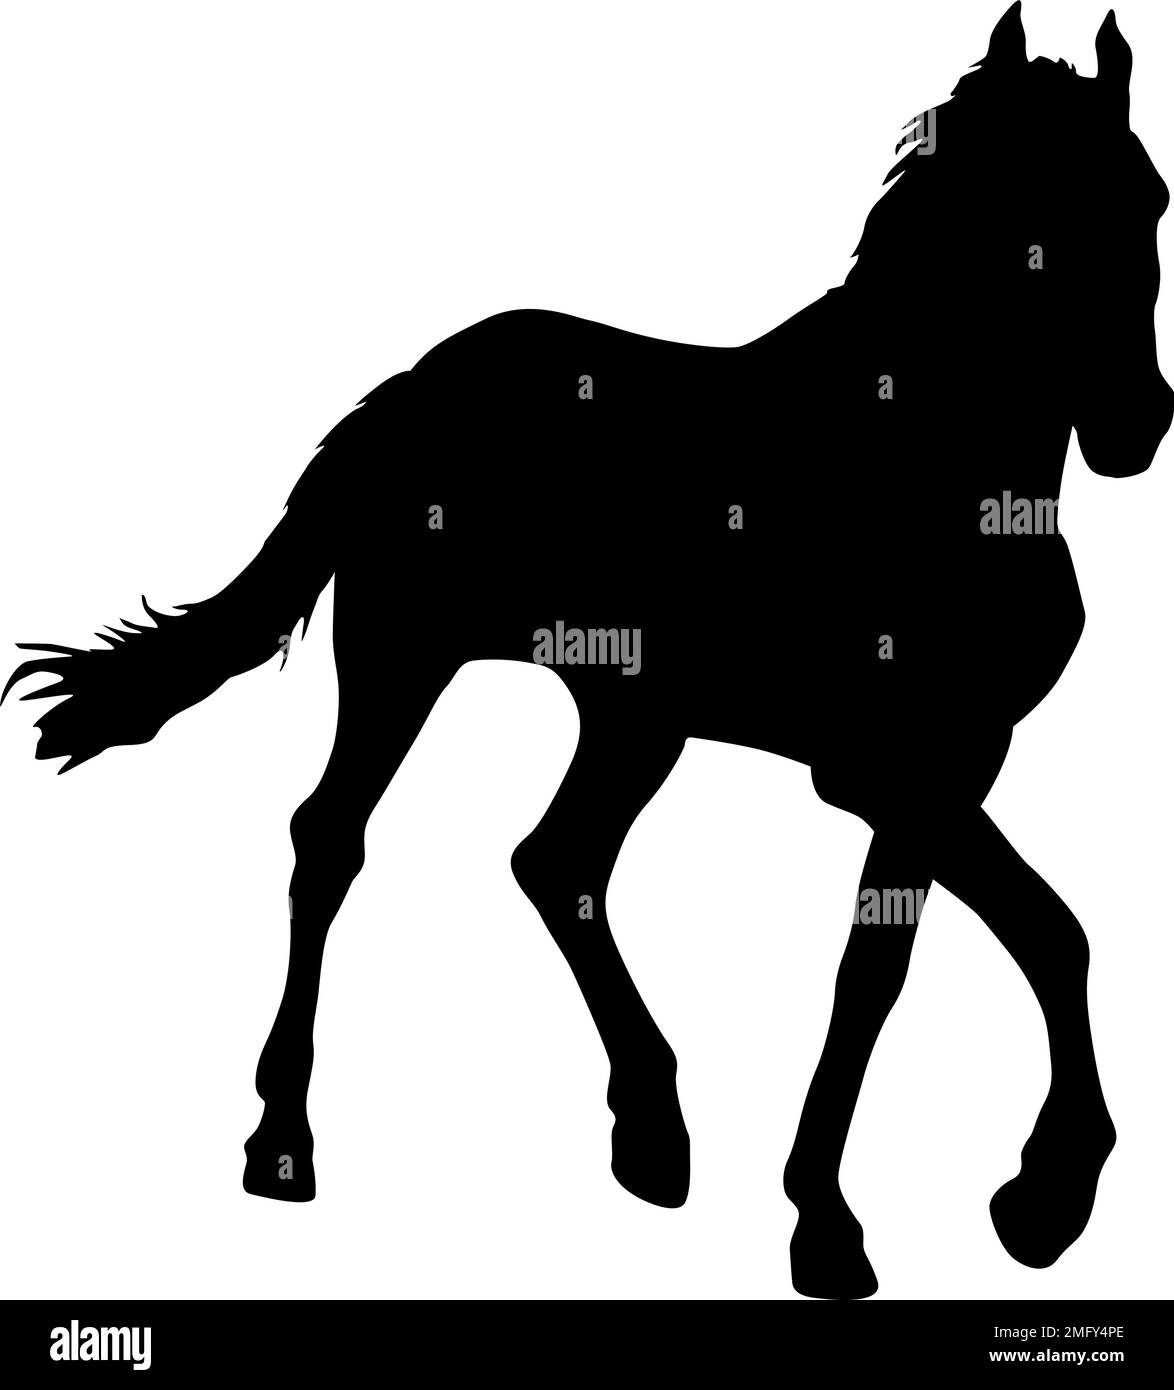 Silueta de caballo mustang negro ilustración vectorial Ilustración del Vector